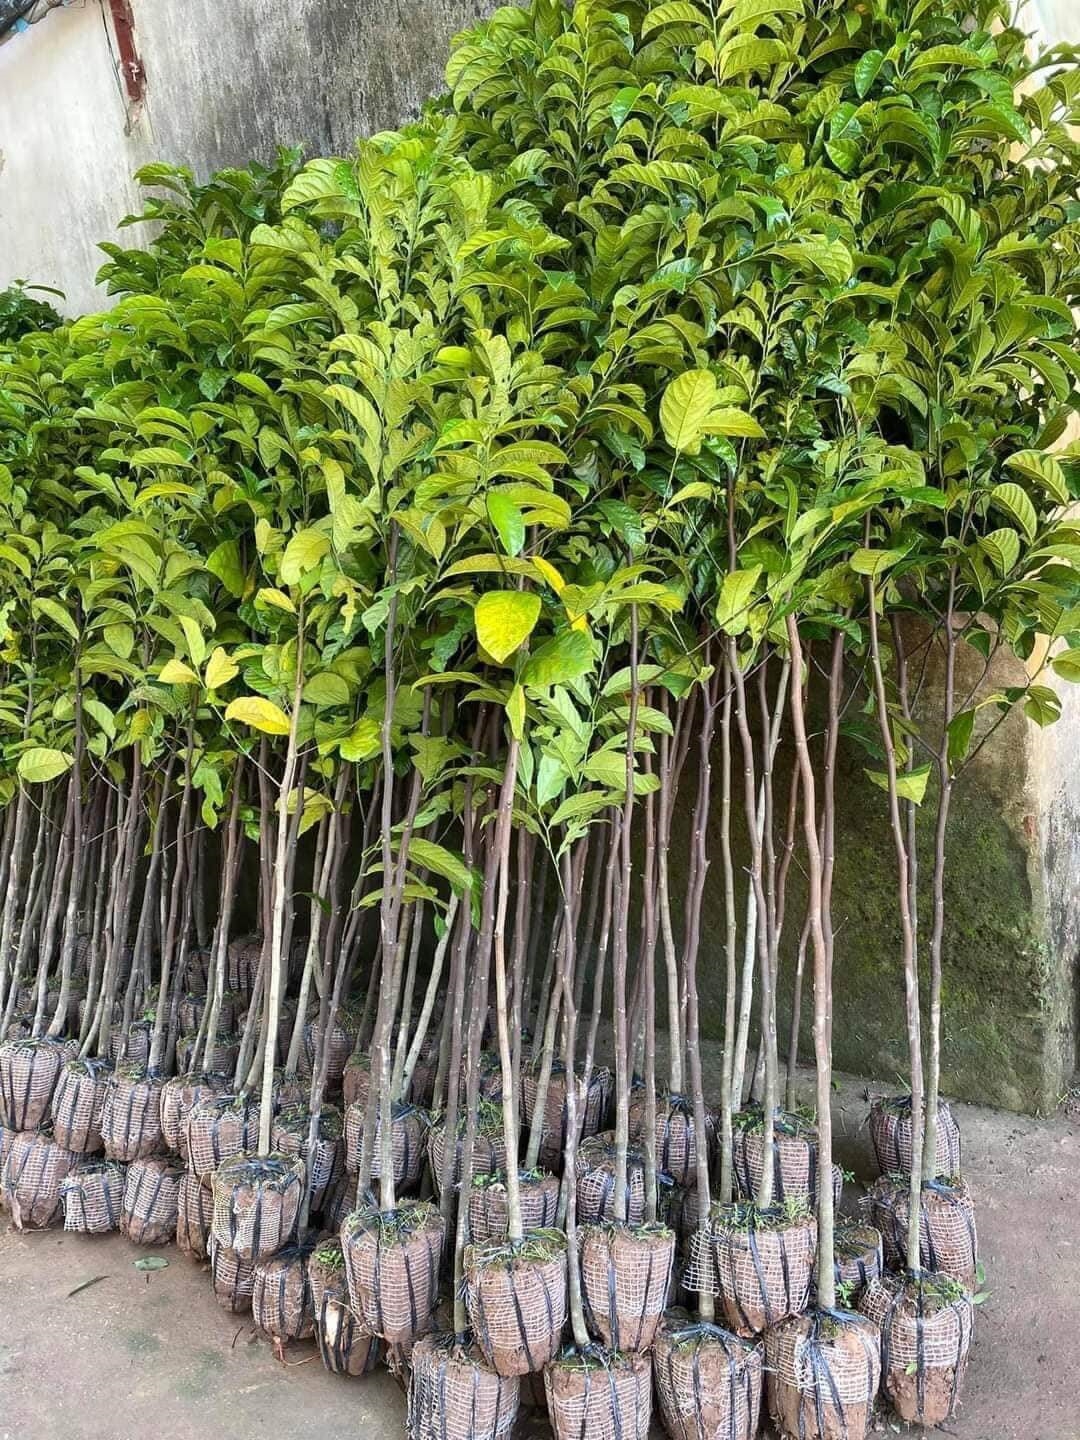 (Tổng hợp) Hướng dẫn cách trồng và chăm sóc cây chay cho năng suất cao 1